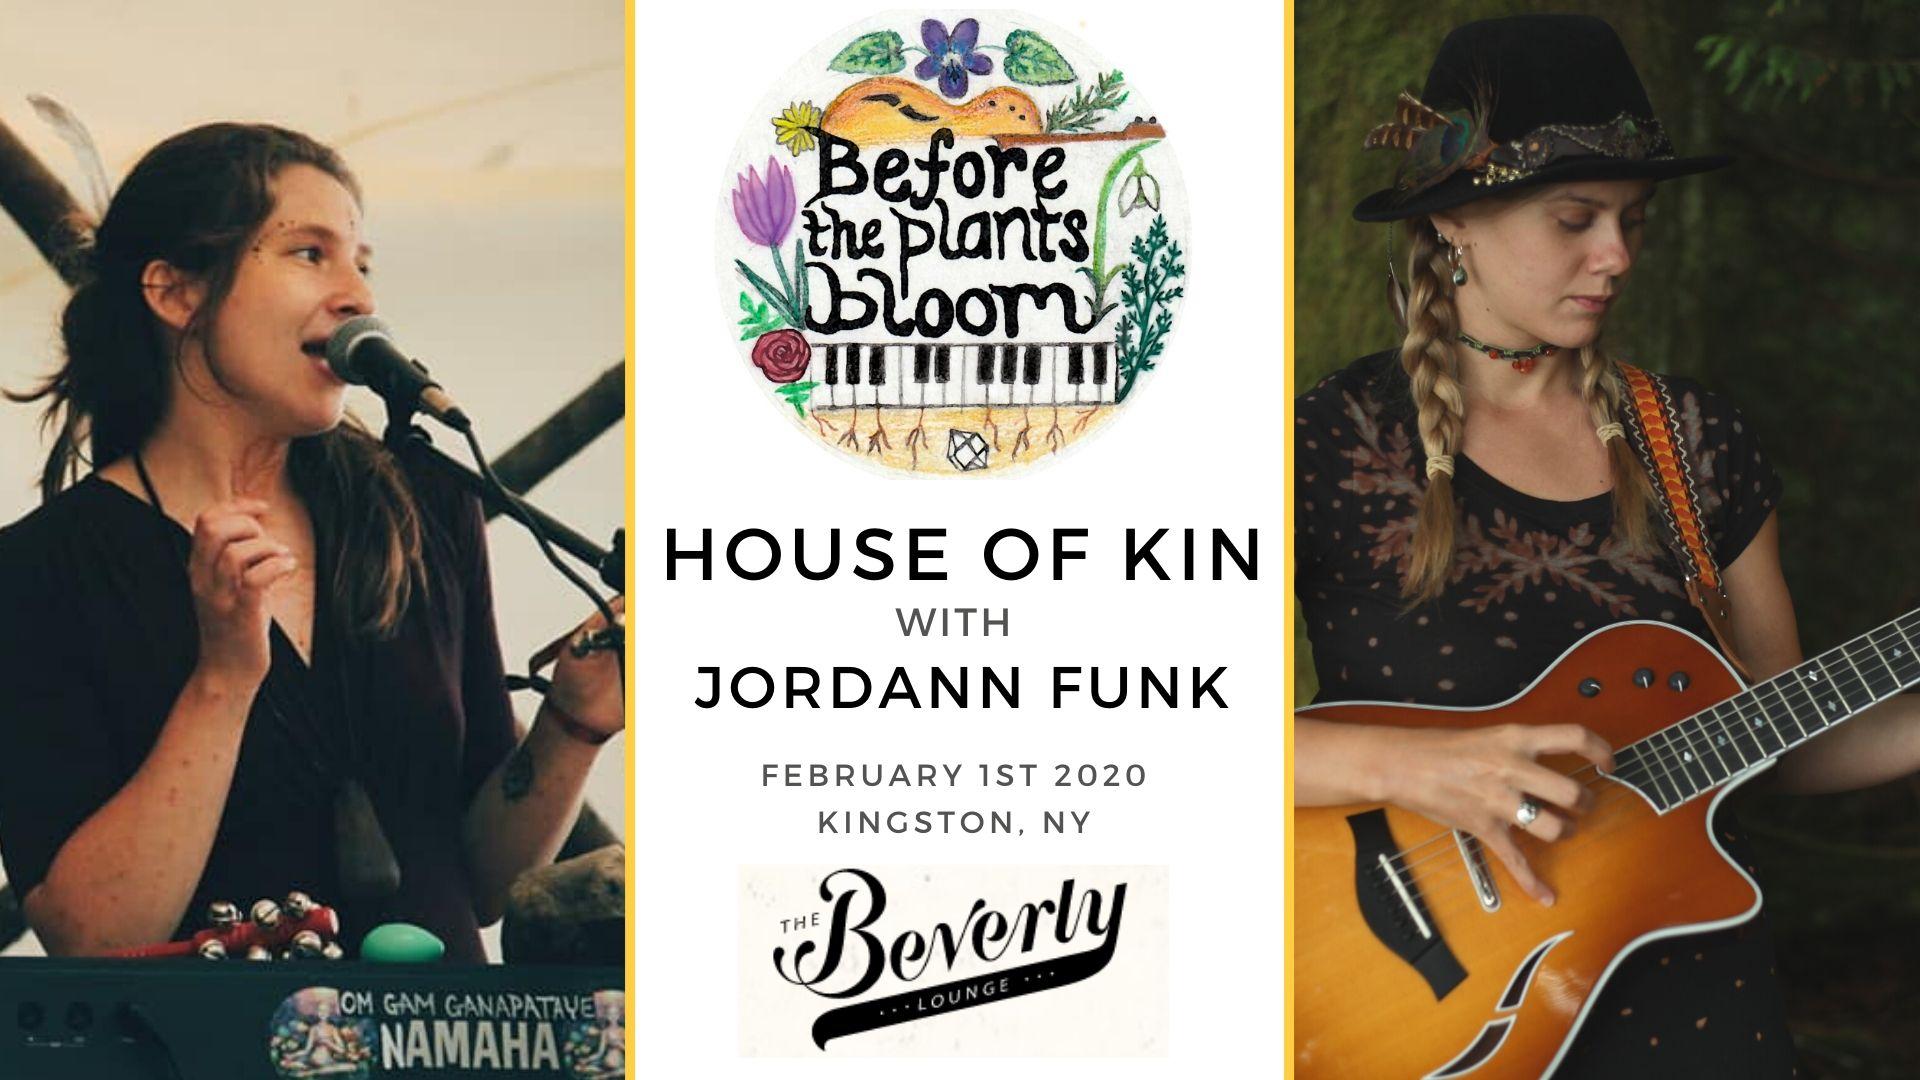 House of Kin, Jordann Funk in Kingston NY